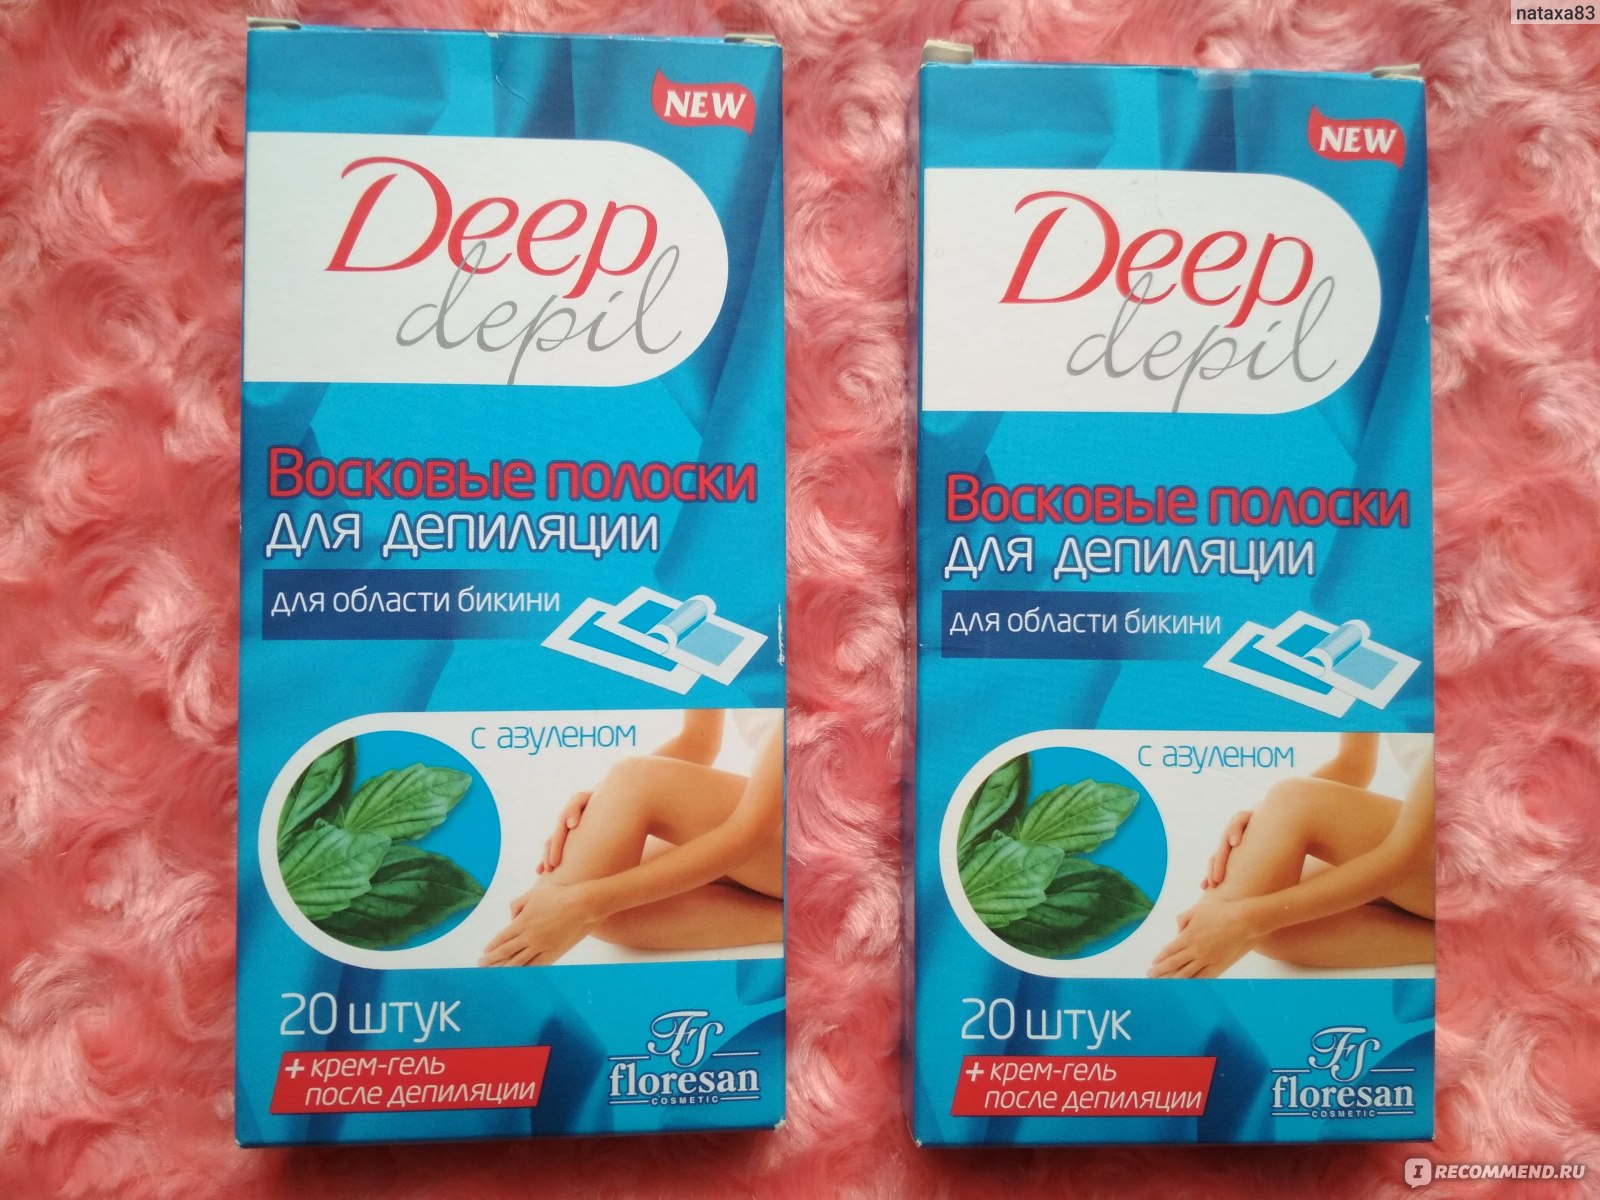 Как пользоваться фруктовым воском для депиляции deep depil